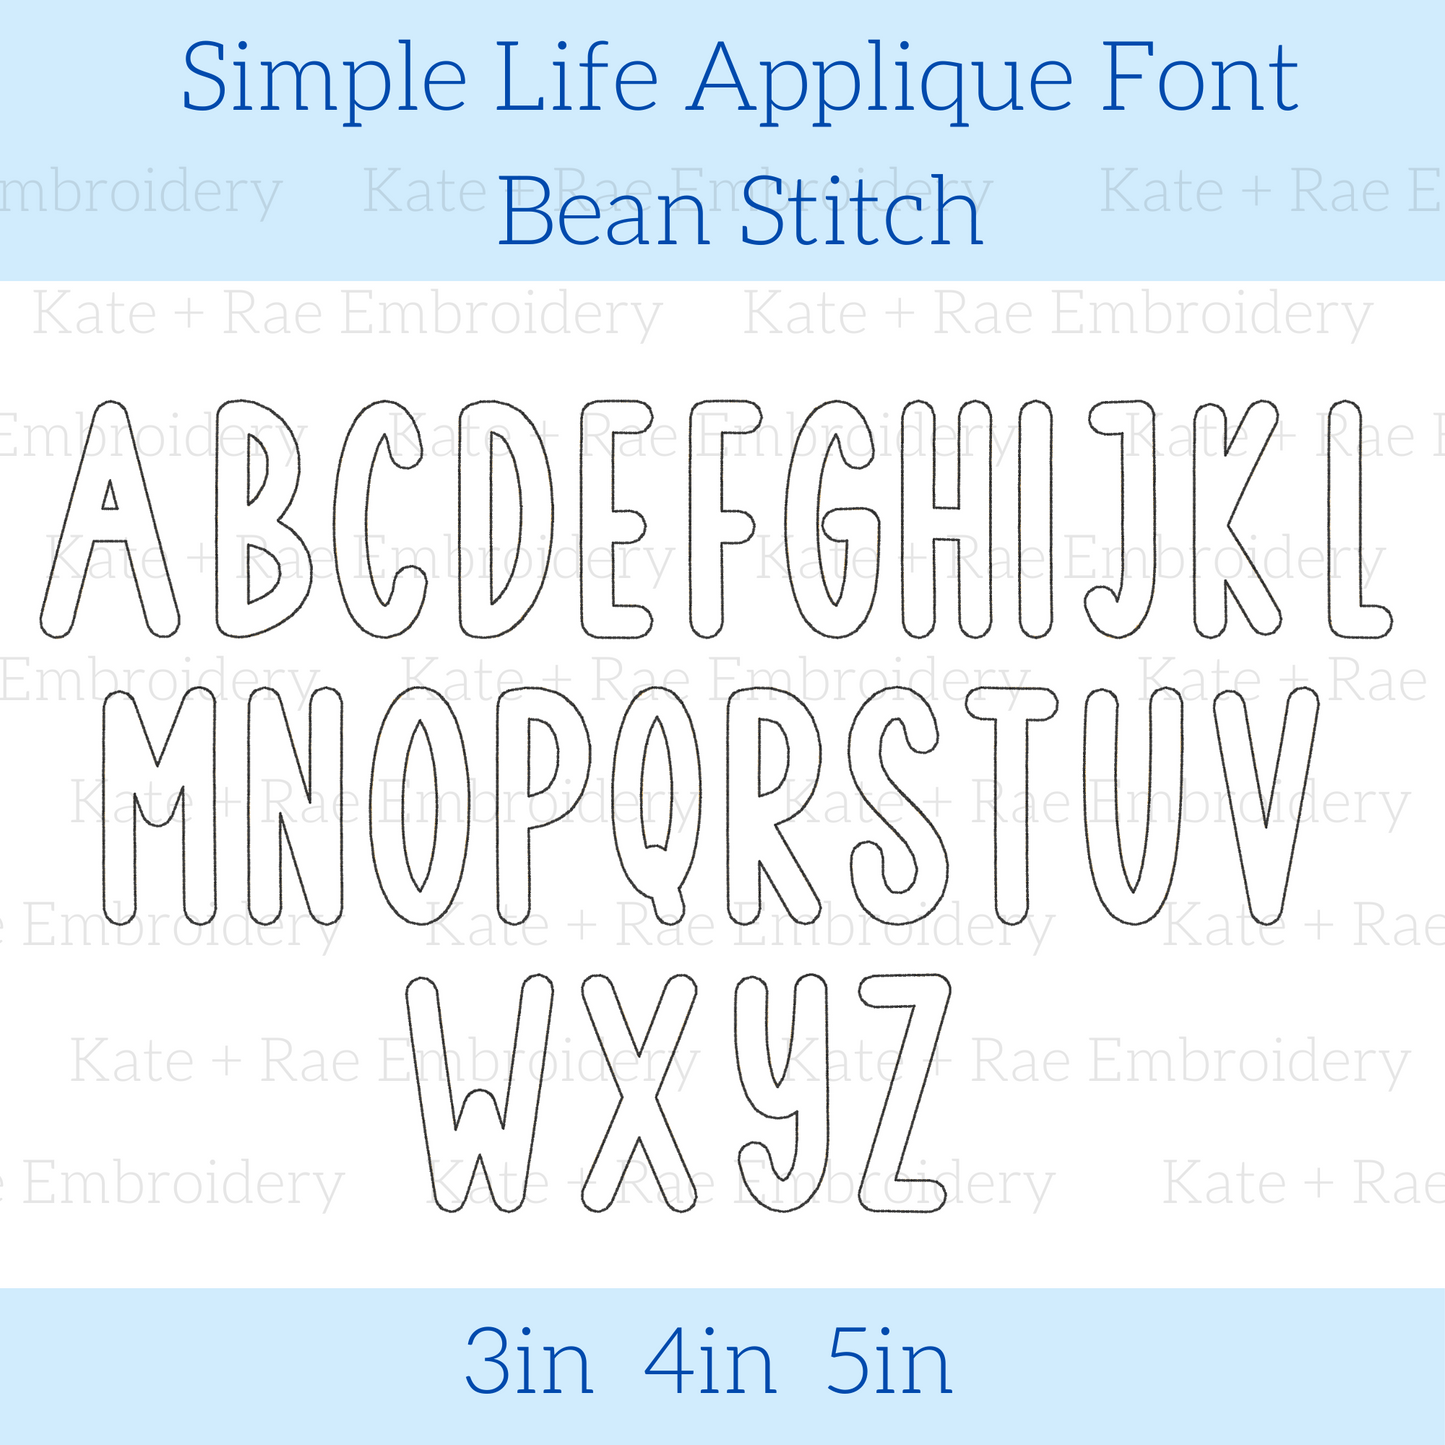 Simple Life Applique Font - Bean Stitch